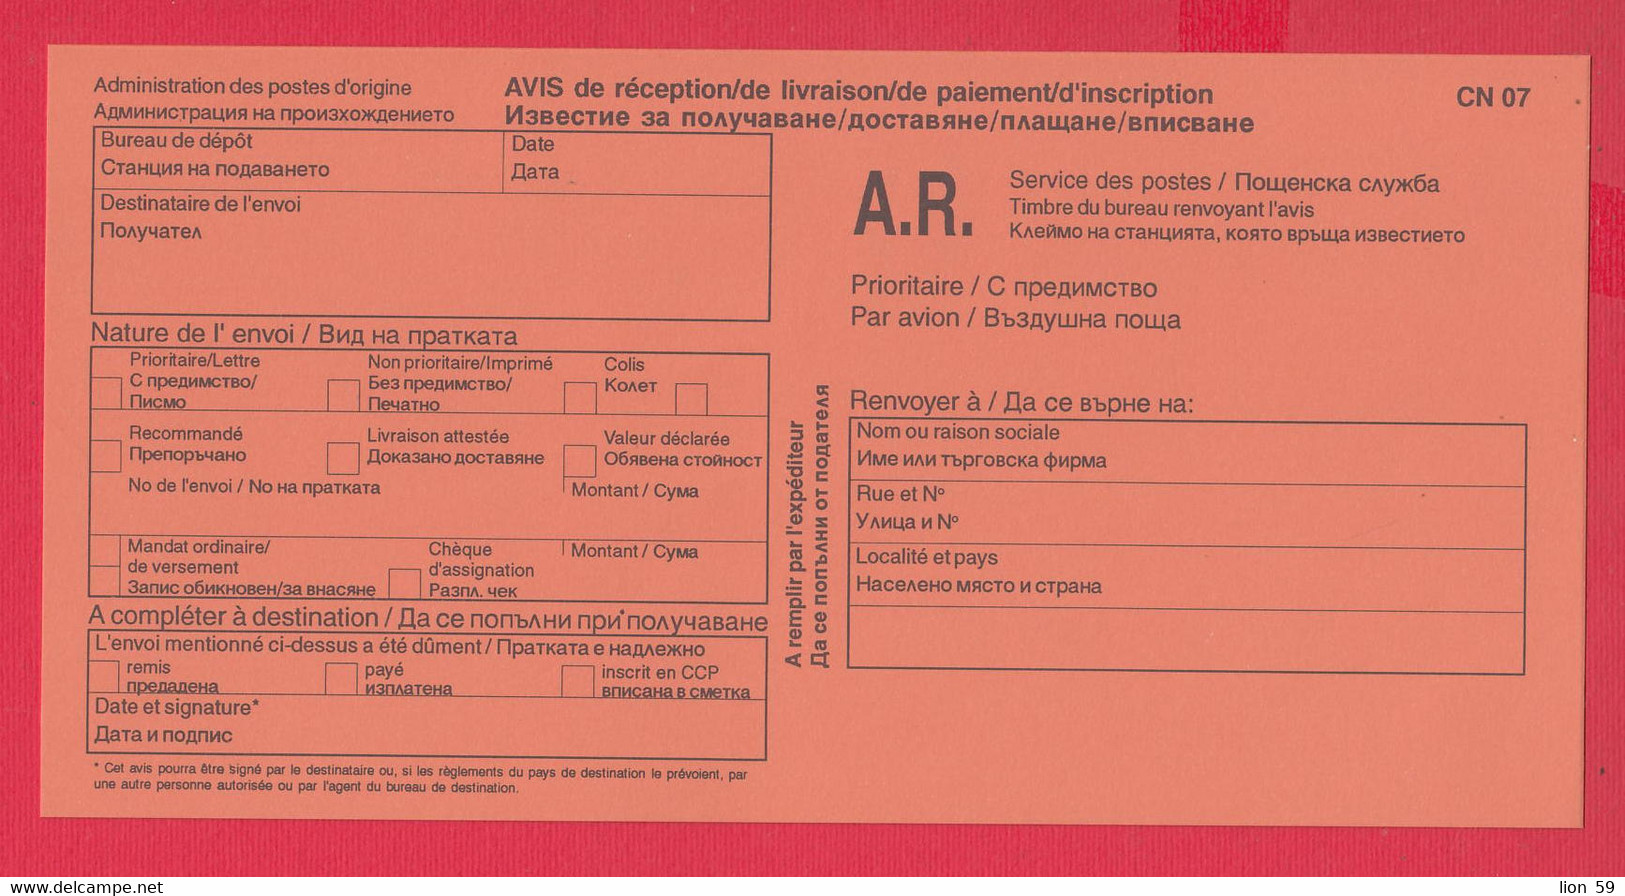 112K96 / Mint  Form CN 07 Bulgaria 2002 AVIS De Réception /de Livraison /de Paiement/ D'inscription Bulgarie Bulgarien - Covers & Documents